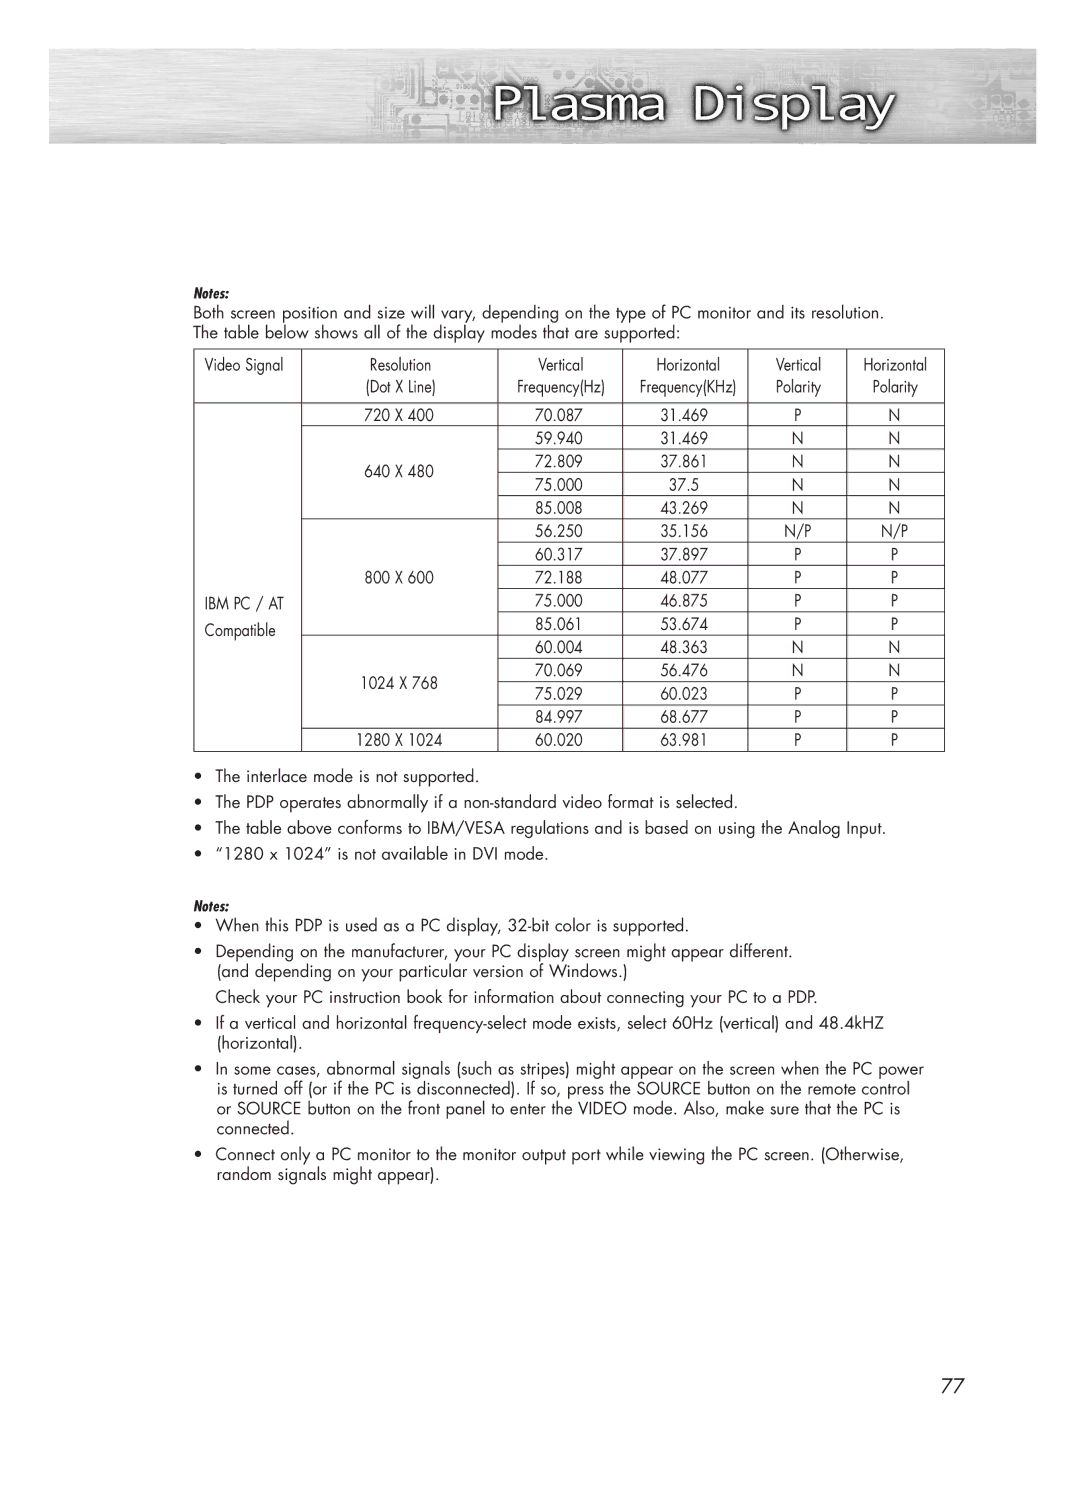 Samsung HP-P5031 manual Ibm Pc / At 